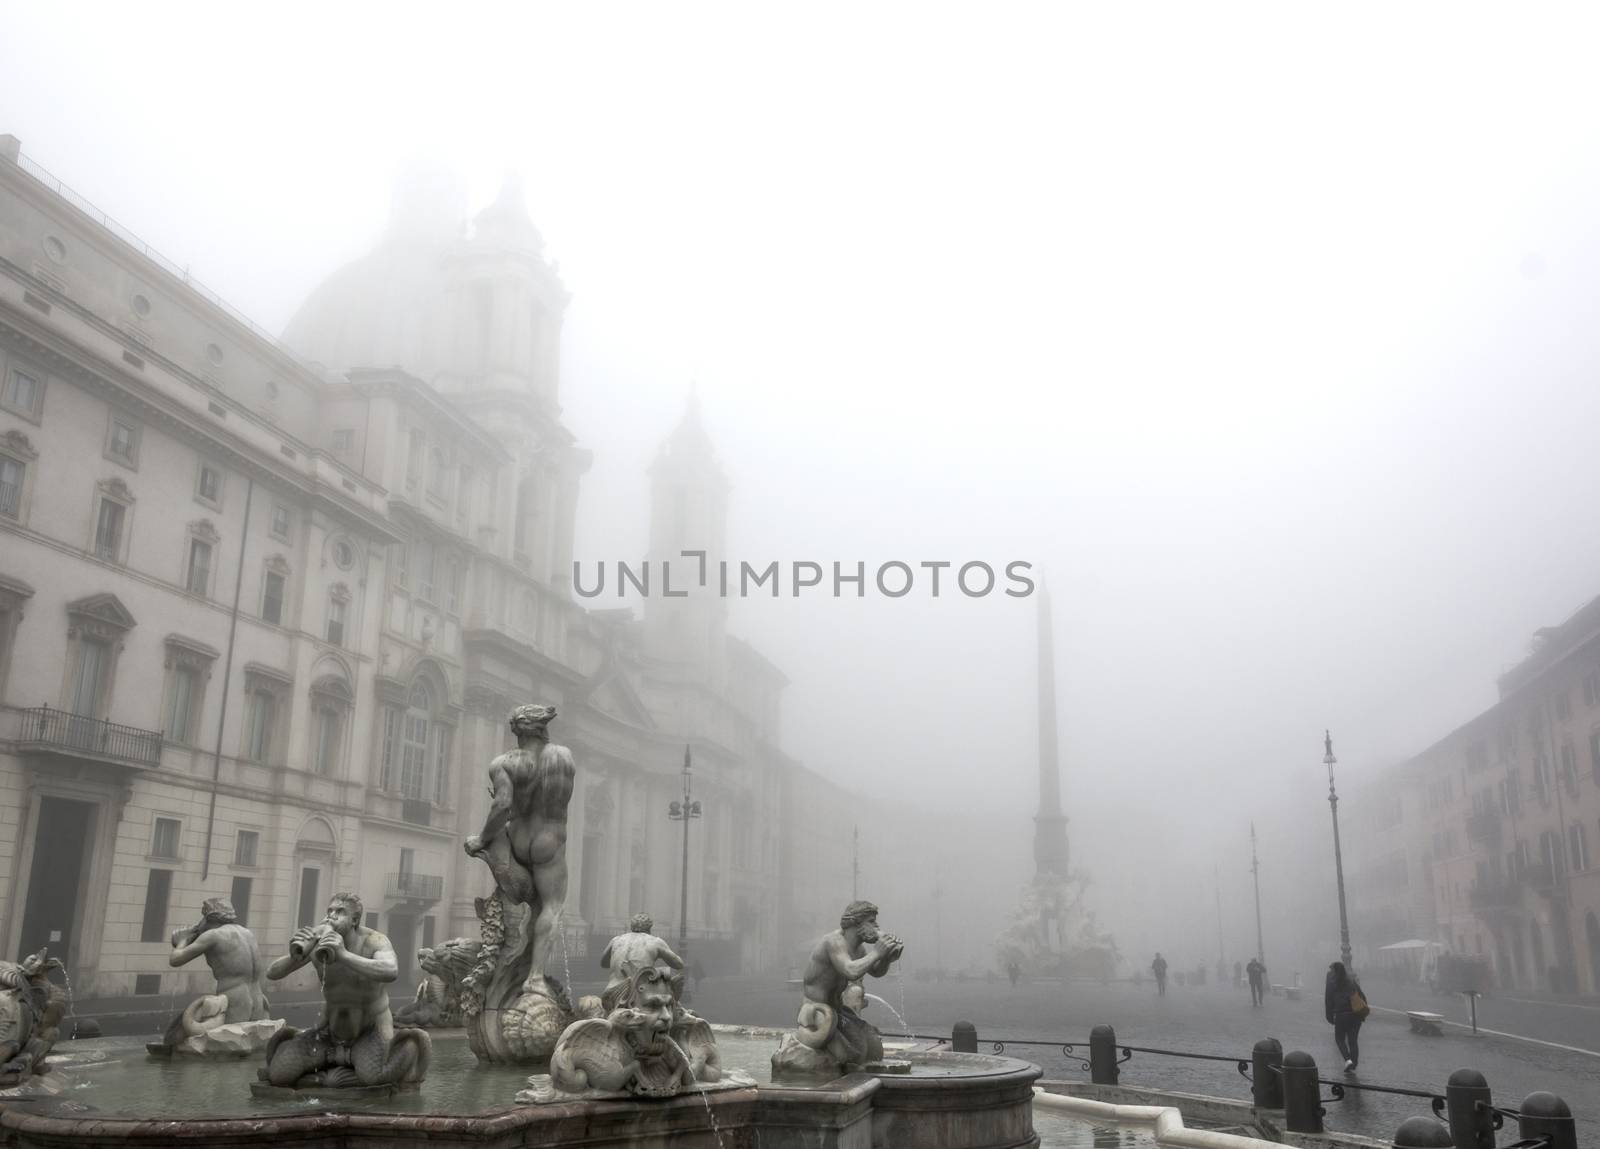 Piazza Navona in the fog by rarrarorro